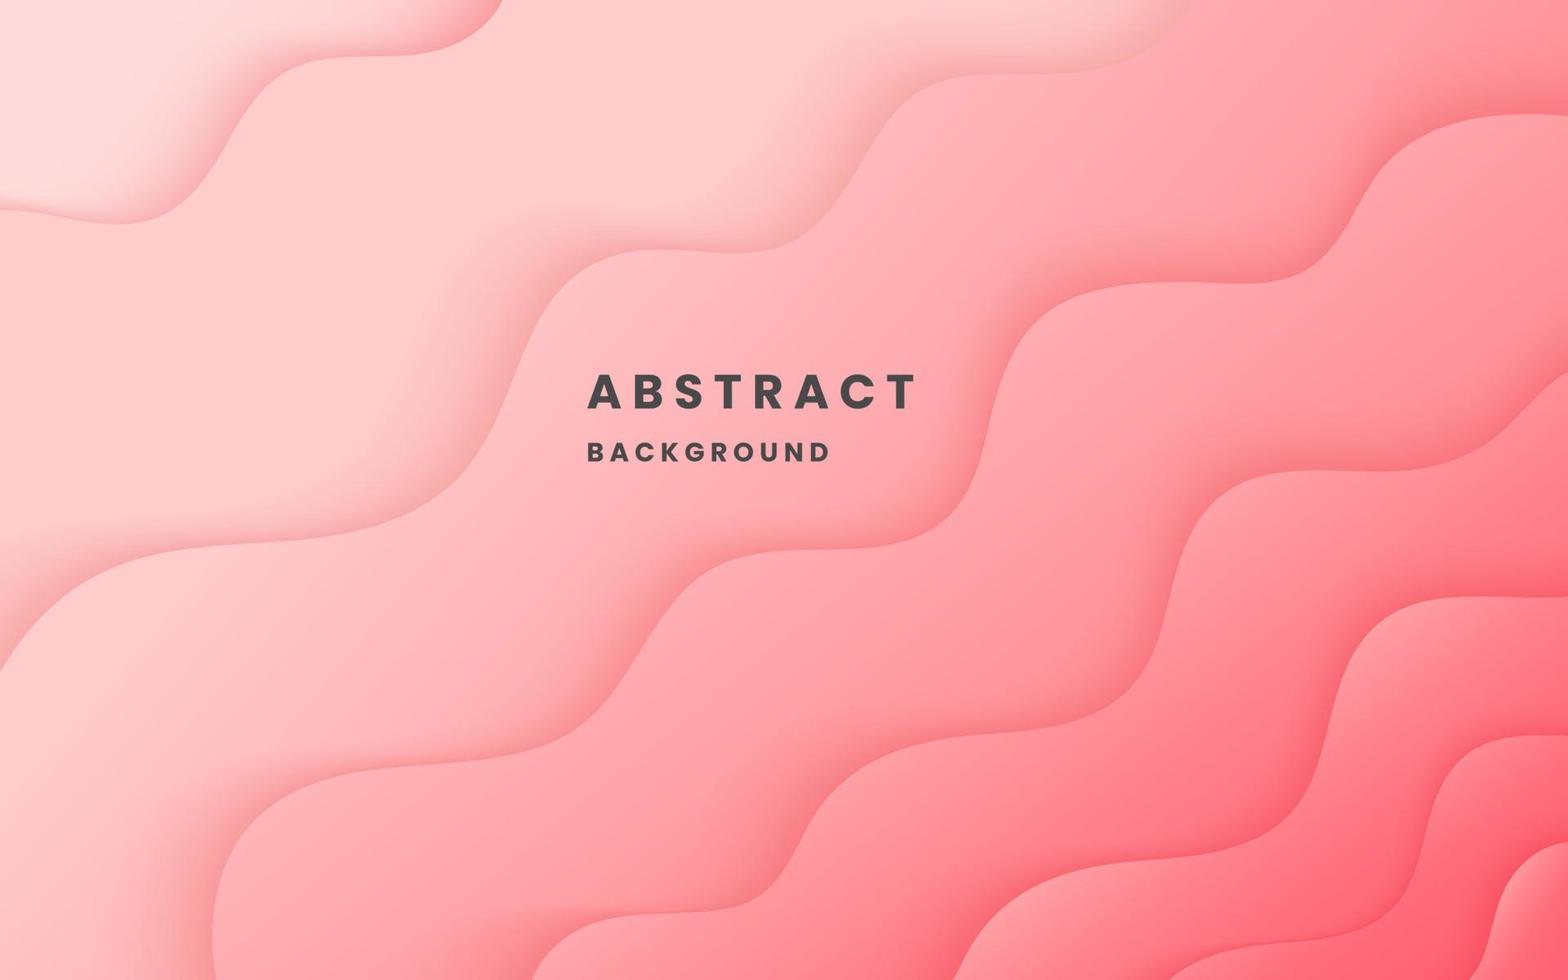 rosa lutning bakgrund dynamisk vågig ljus och skugga. flytande dynamisk former abstrakt sammansättning. modern elegant design bakgrund. illustration vektor 10 eps.